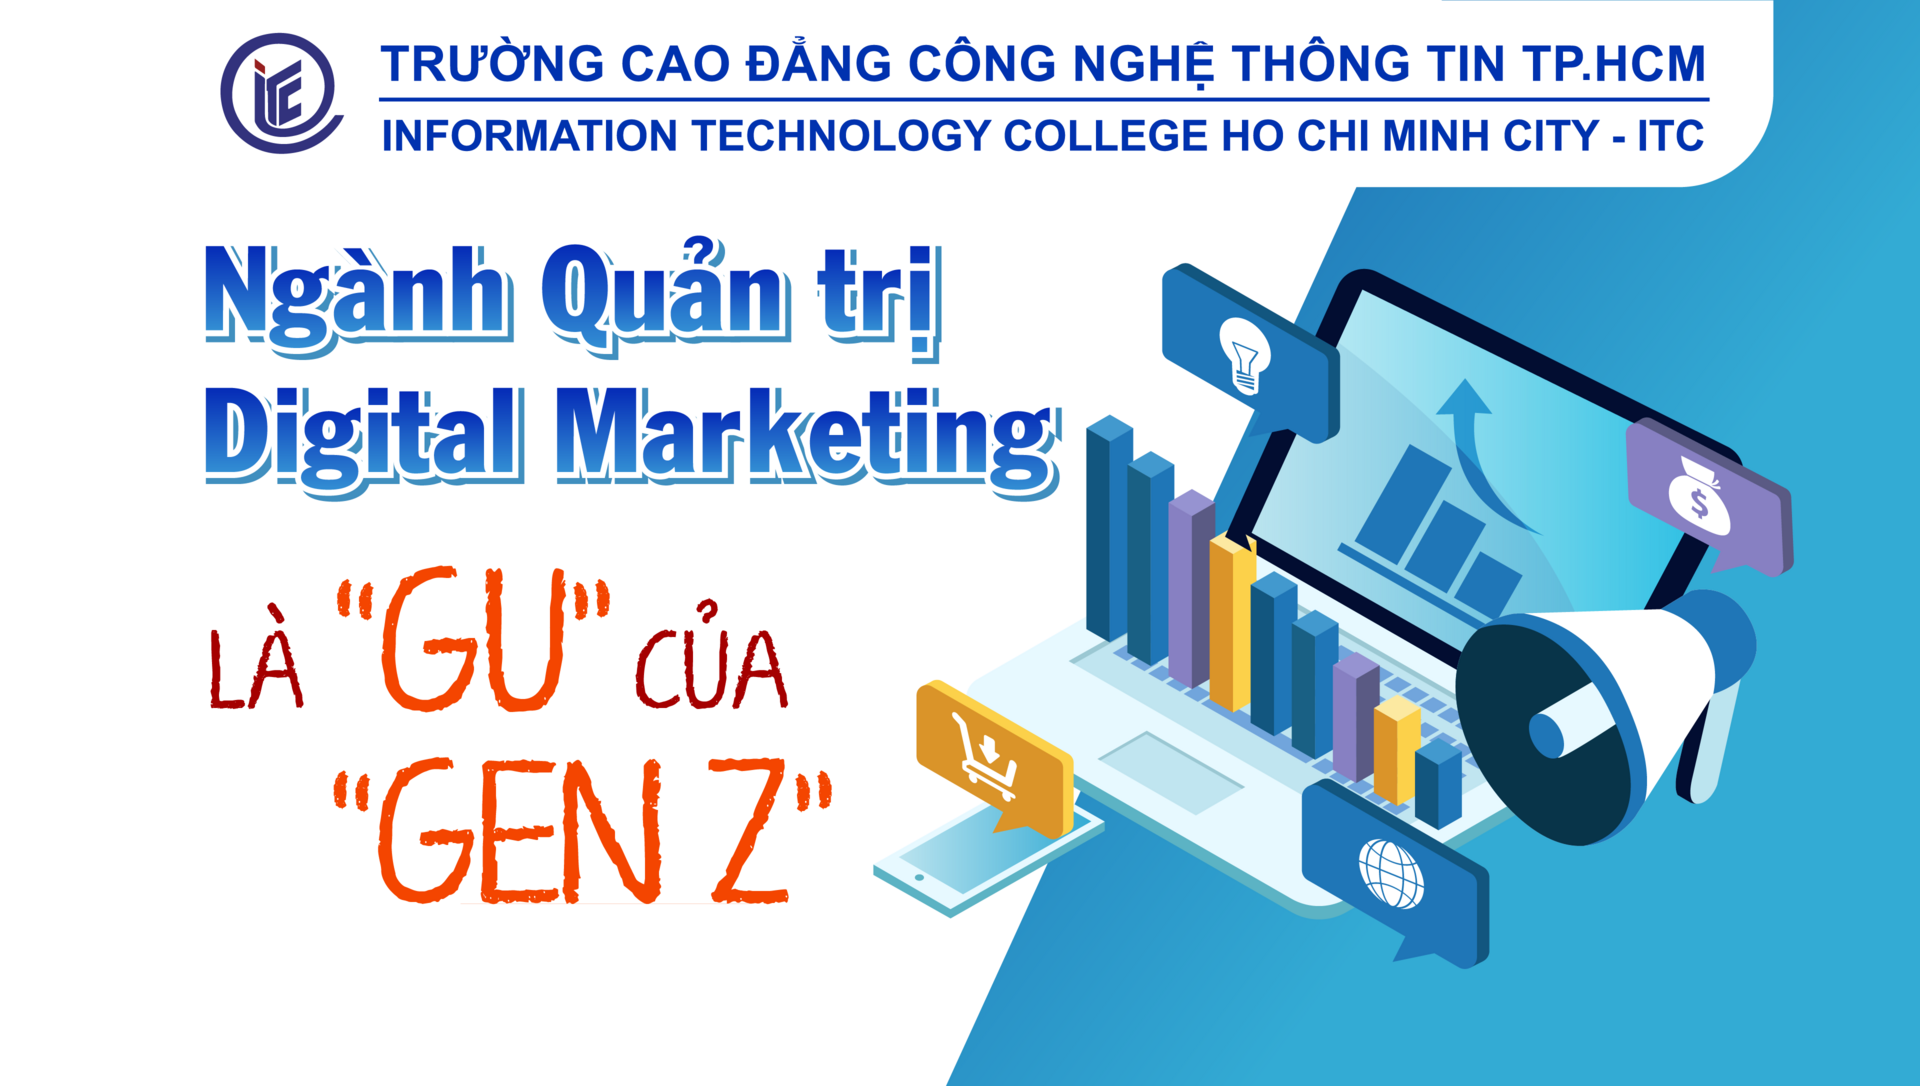 Ngành Quản trị Digital Marketing là “Gu” của “Gen Z”